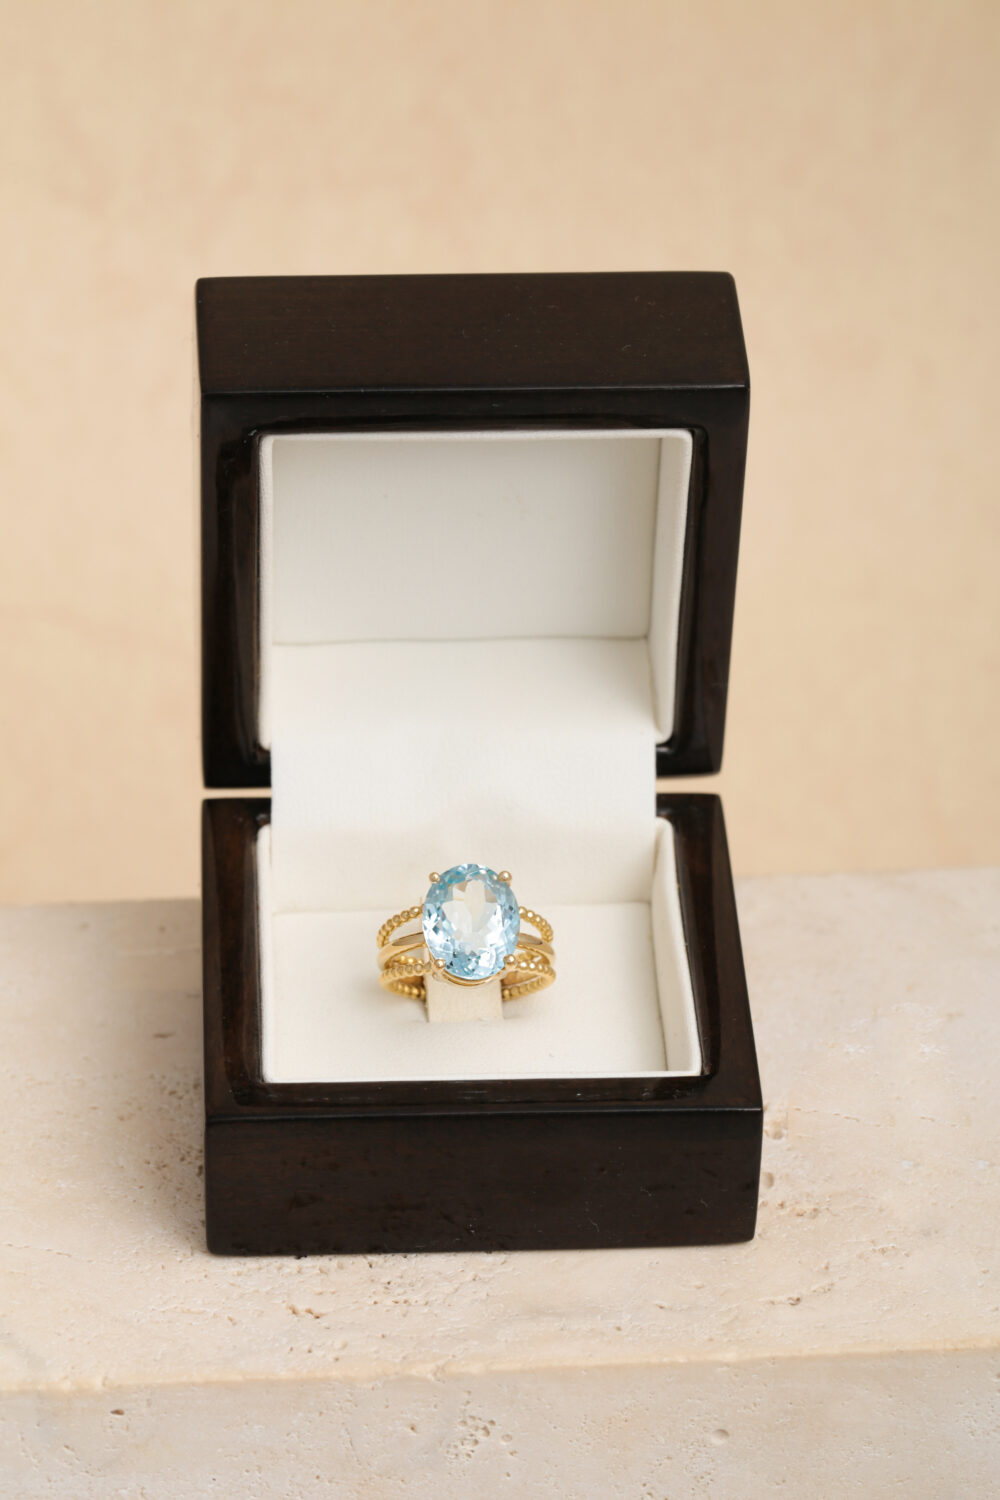 Ovale aquamarijn ring in 18-karaats geelgoud bezet met een aquamarijn edelsteen. Al onze sieraden zijn handgemaakt door sieradenontwerpster Pascale Masselis.